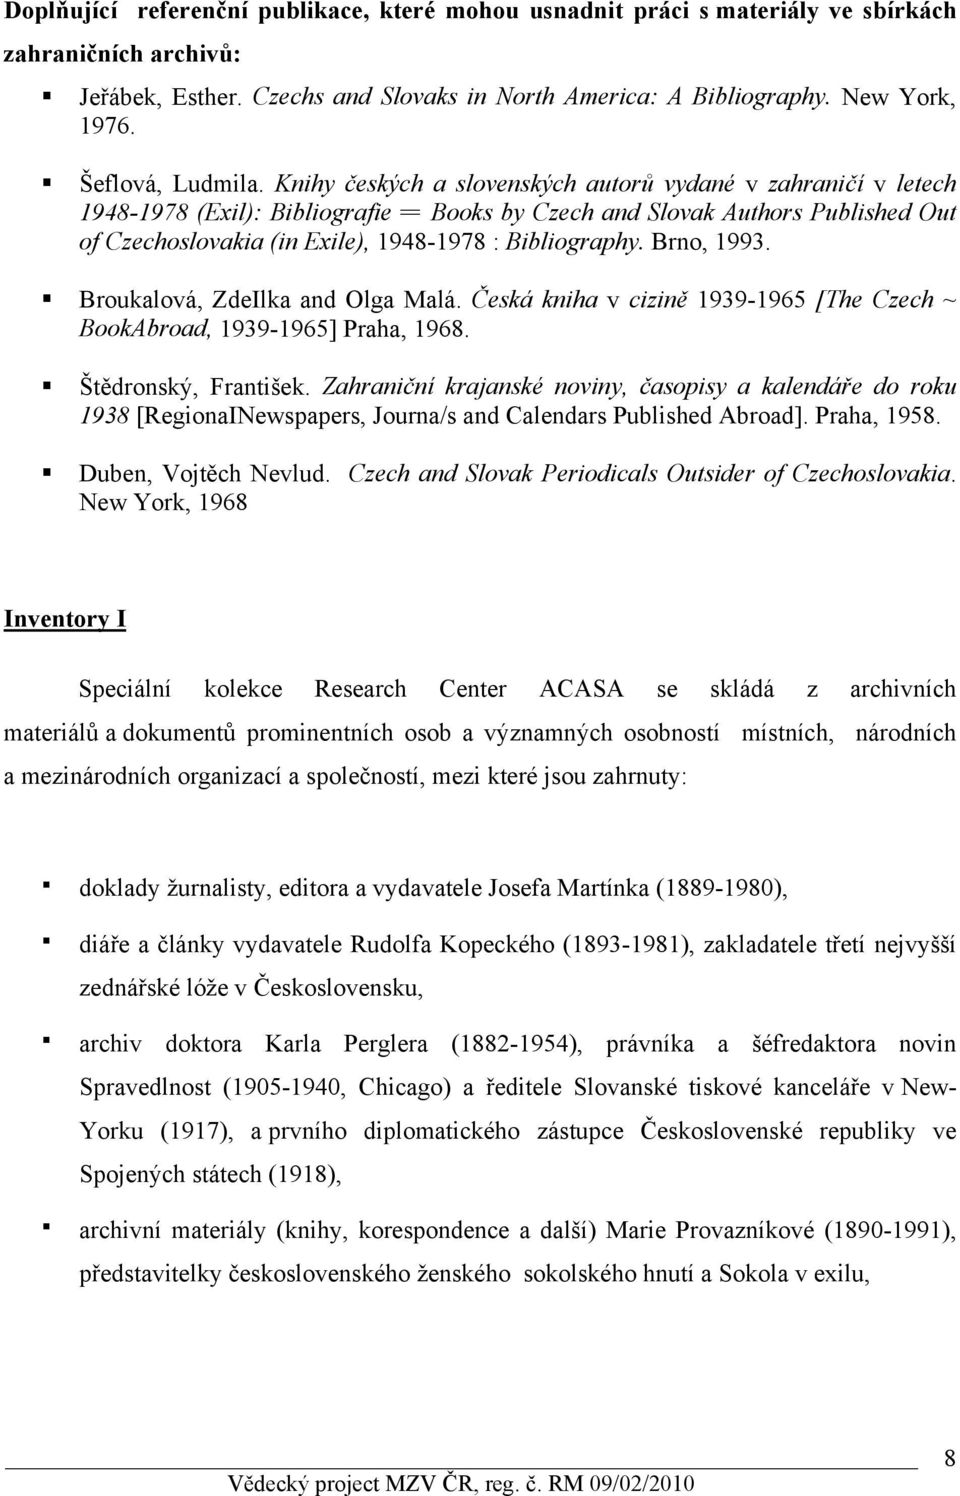 Knihy českých a slovenských autorů vydané v zahraničí v letech 1948-1978 (Exil): Bibliografie = Books by Czech and Slovak Authors Published Out of Czechoslovakia (in Exile), 1948-1978 : Bibliography.